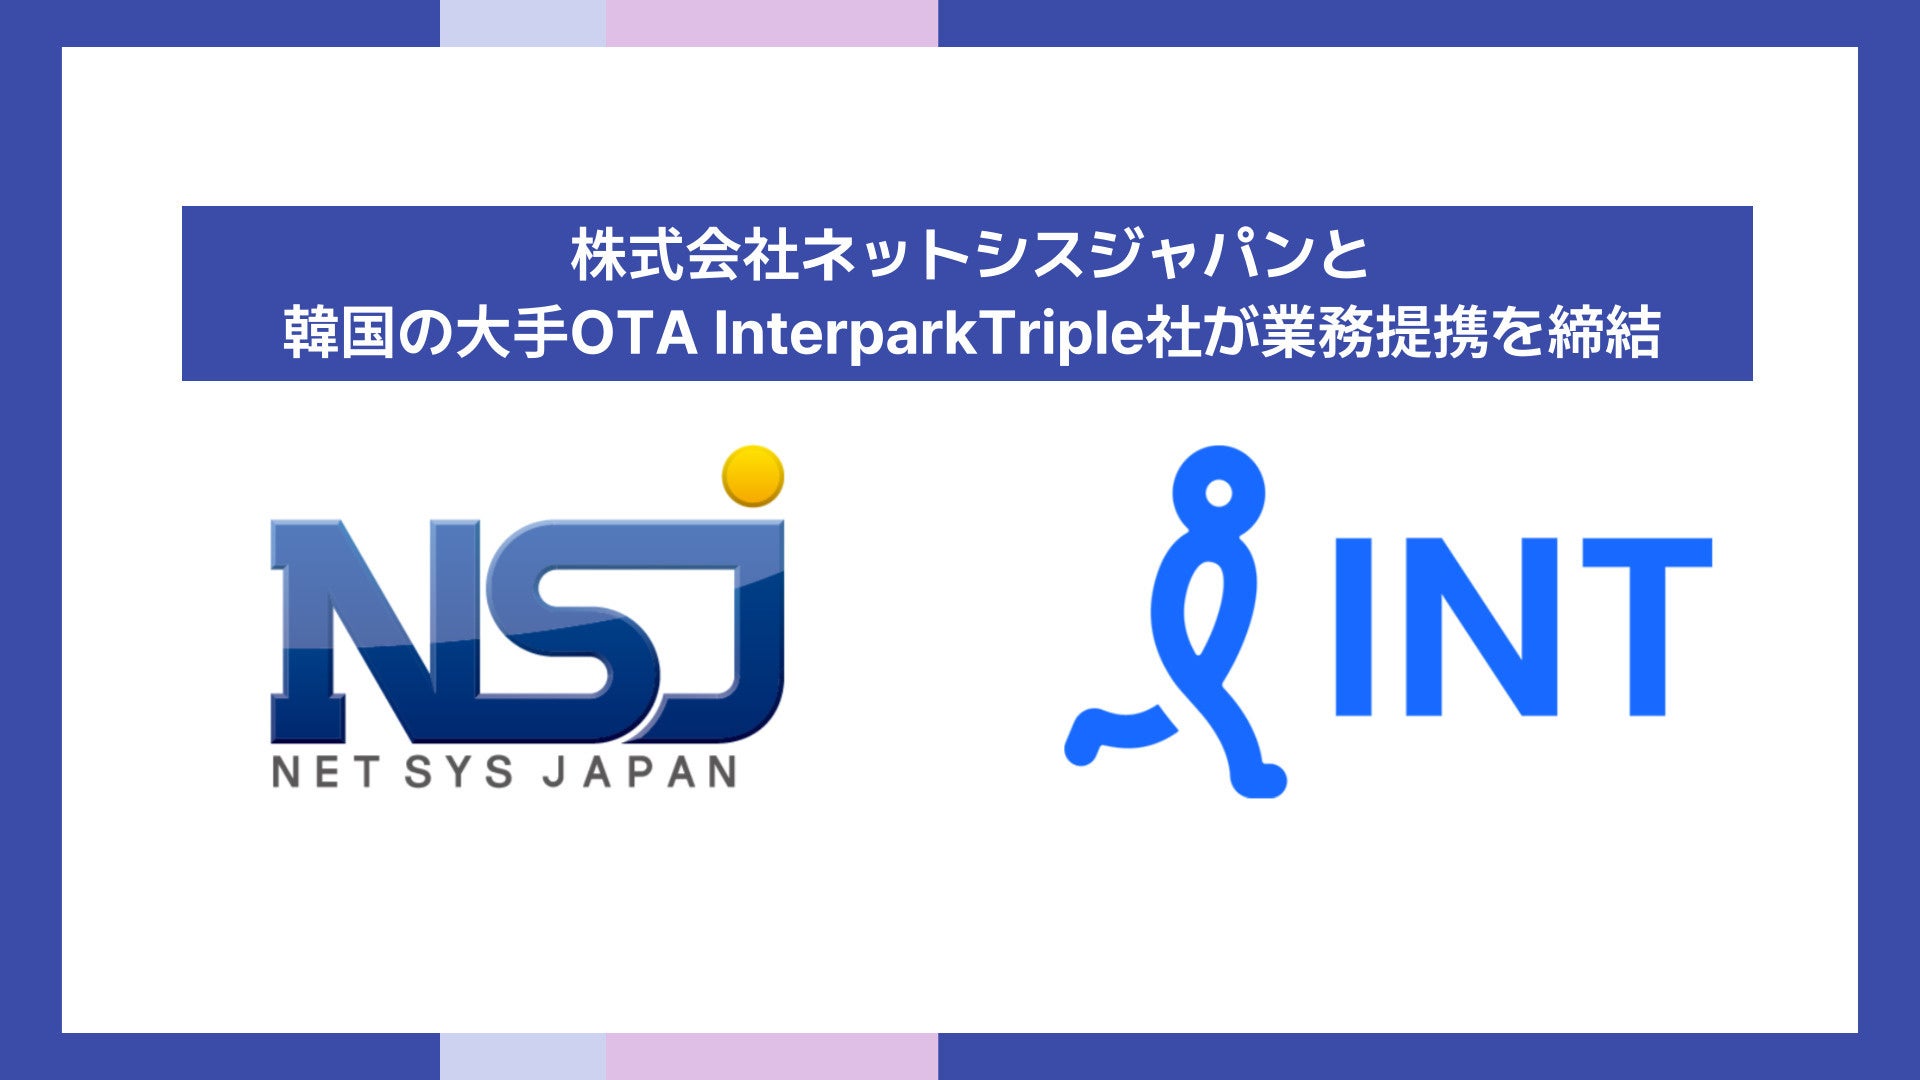 株式会社ネットシスジャパンと韓国の大手OTA InterparkTriple社が業務提携を締結～韓国国内トップクラスの航空チケット販売実績を活かし、日本へのインバウンド誘致拡大へ～